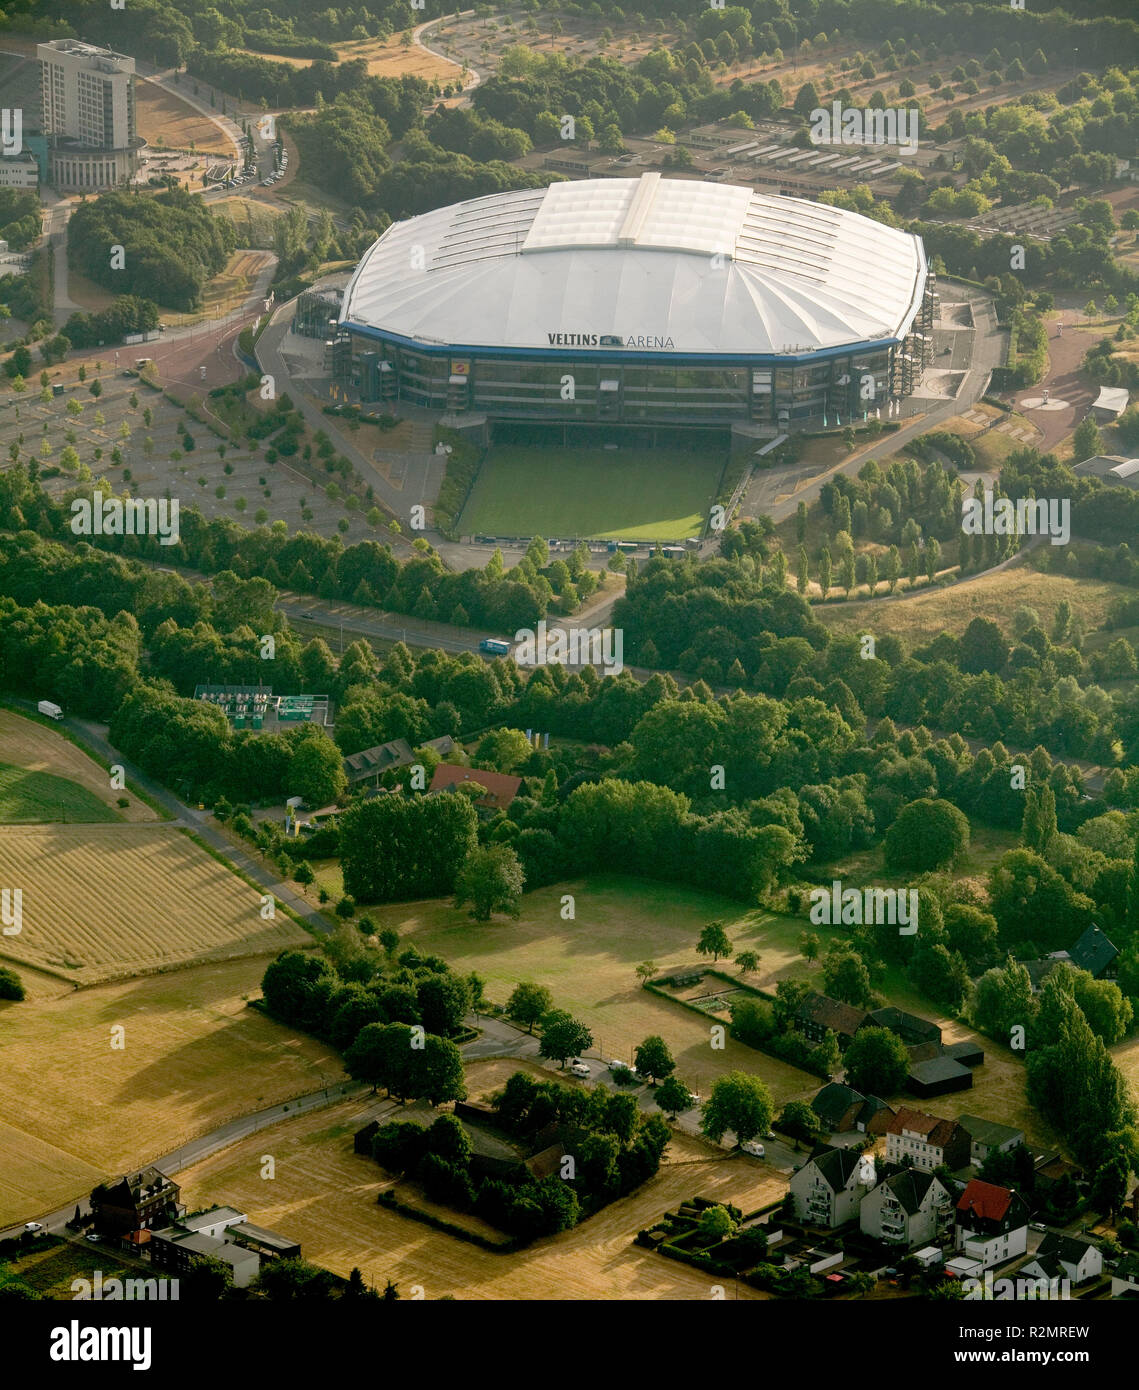 Aerial view, Schalke Arena, Veltins Arena, Buer, Gelsenkirchen, Ruhr area, North Rhine-Westphalia, Germany, Europe, Stock Photo